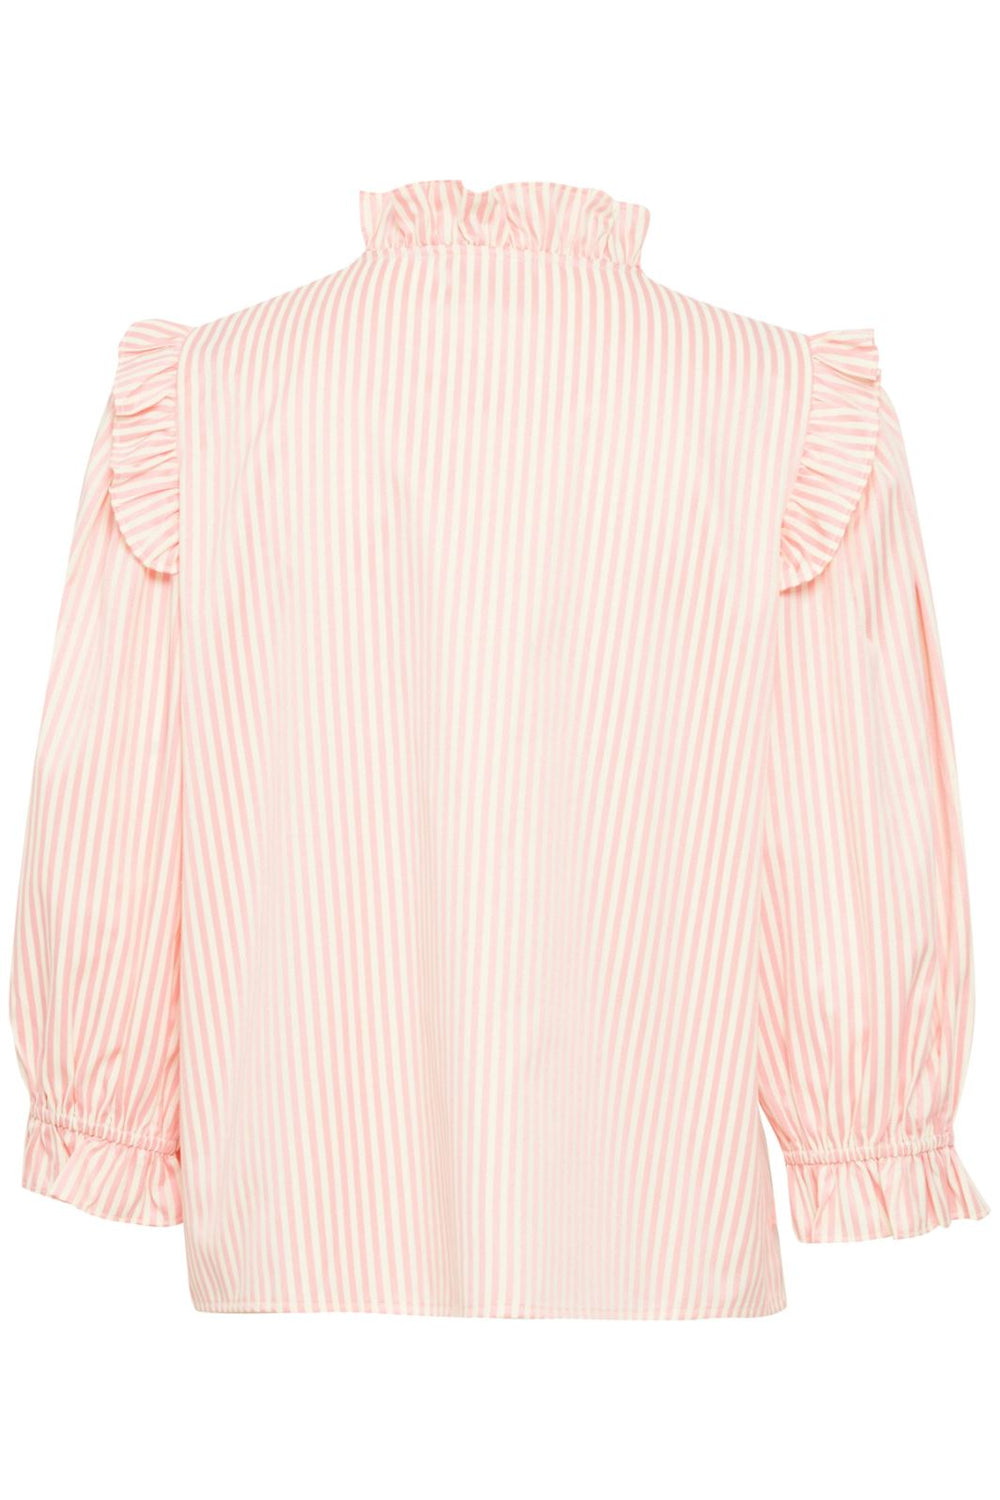 Ichi - Iximarcy Sh - Aurora Pink Strip Skjorter 